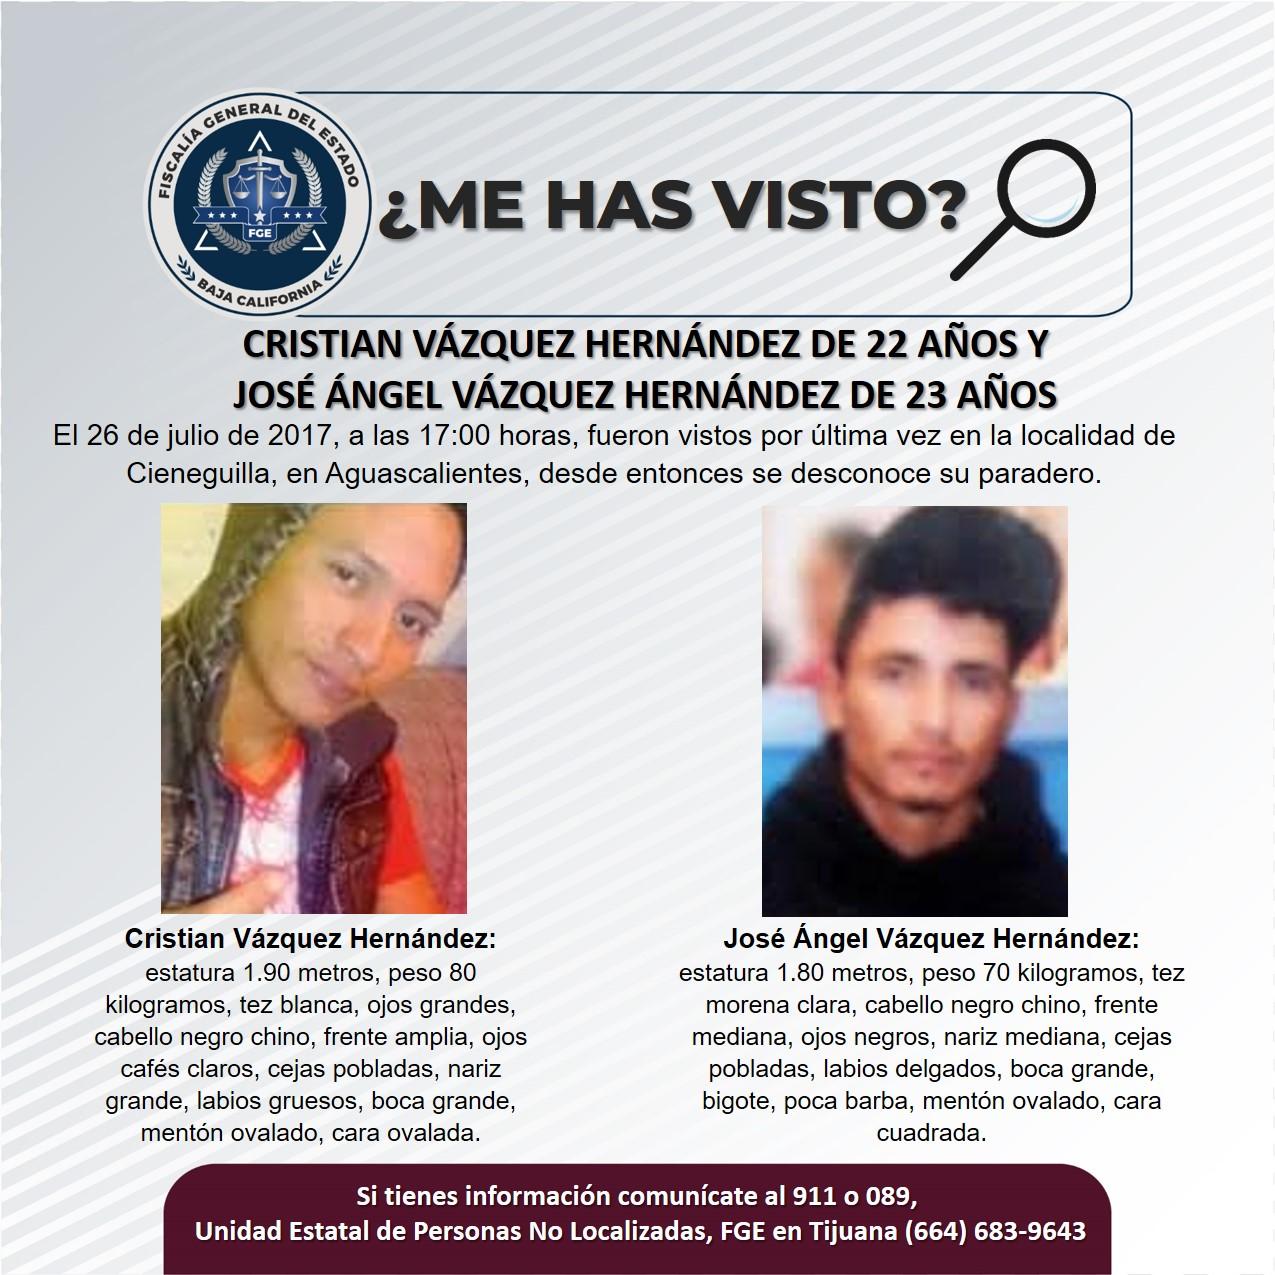 Servicio social: Se busca Cristian Vázquez Hernández de 22 años y José Ángel Vázquez Hernández de 23 años de edad